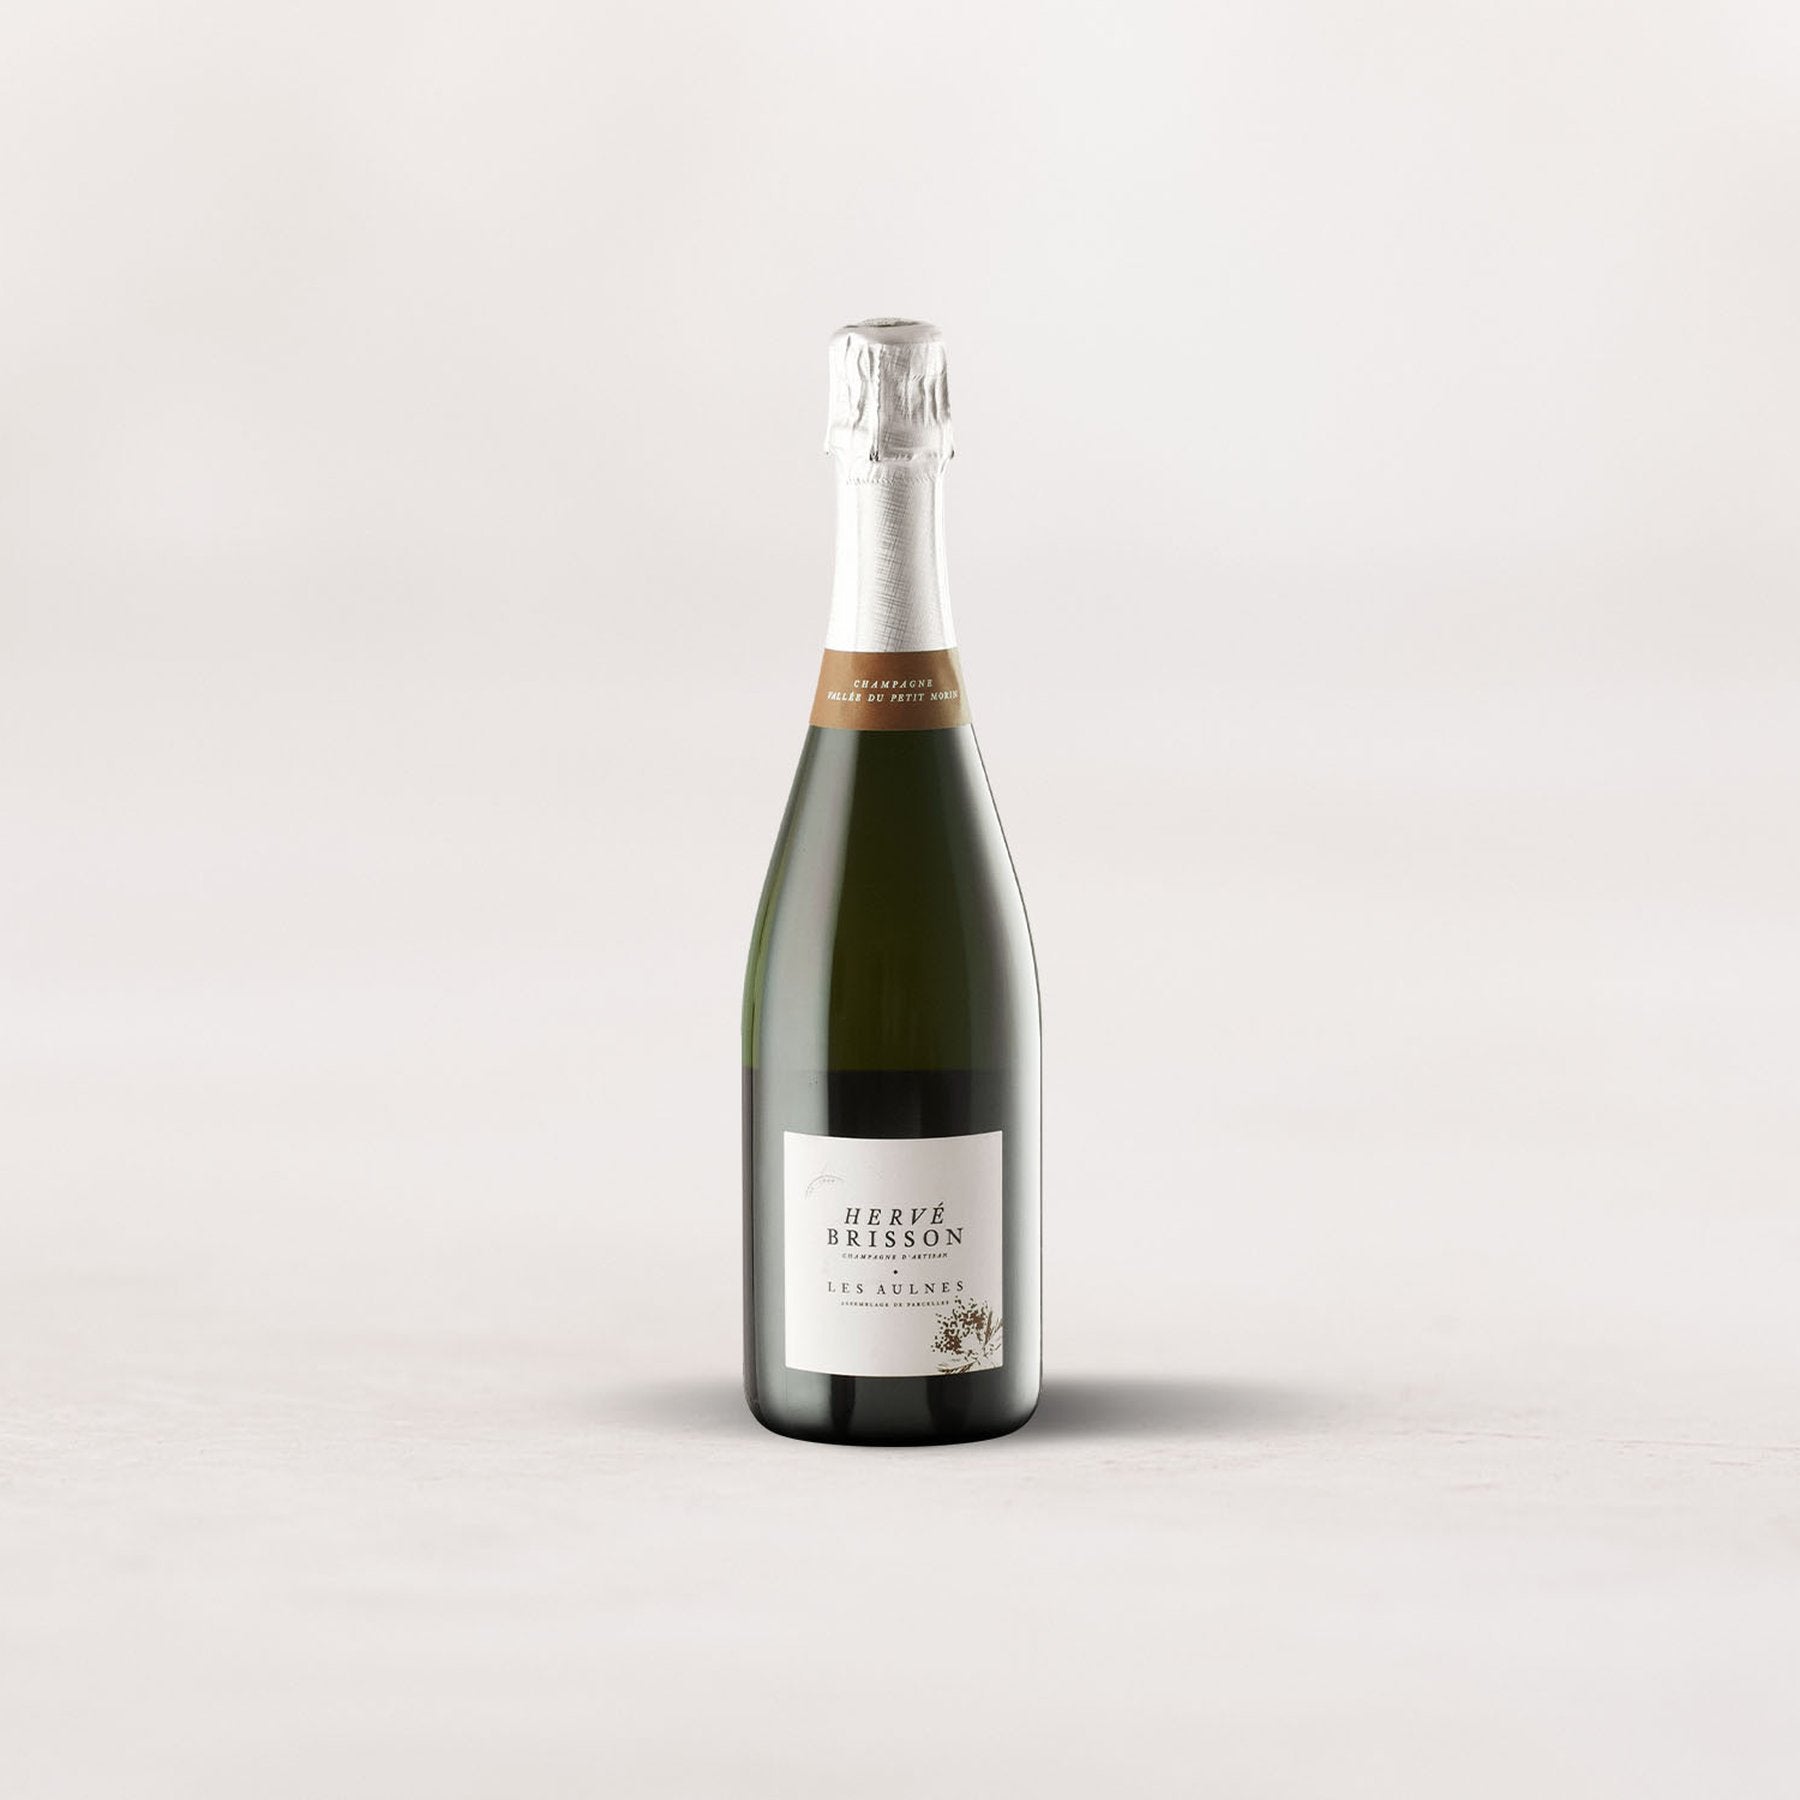 Champagne Hervé Brisson, “Les Aulnes”